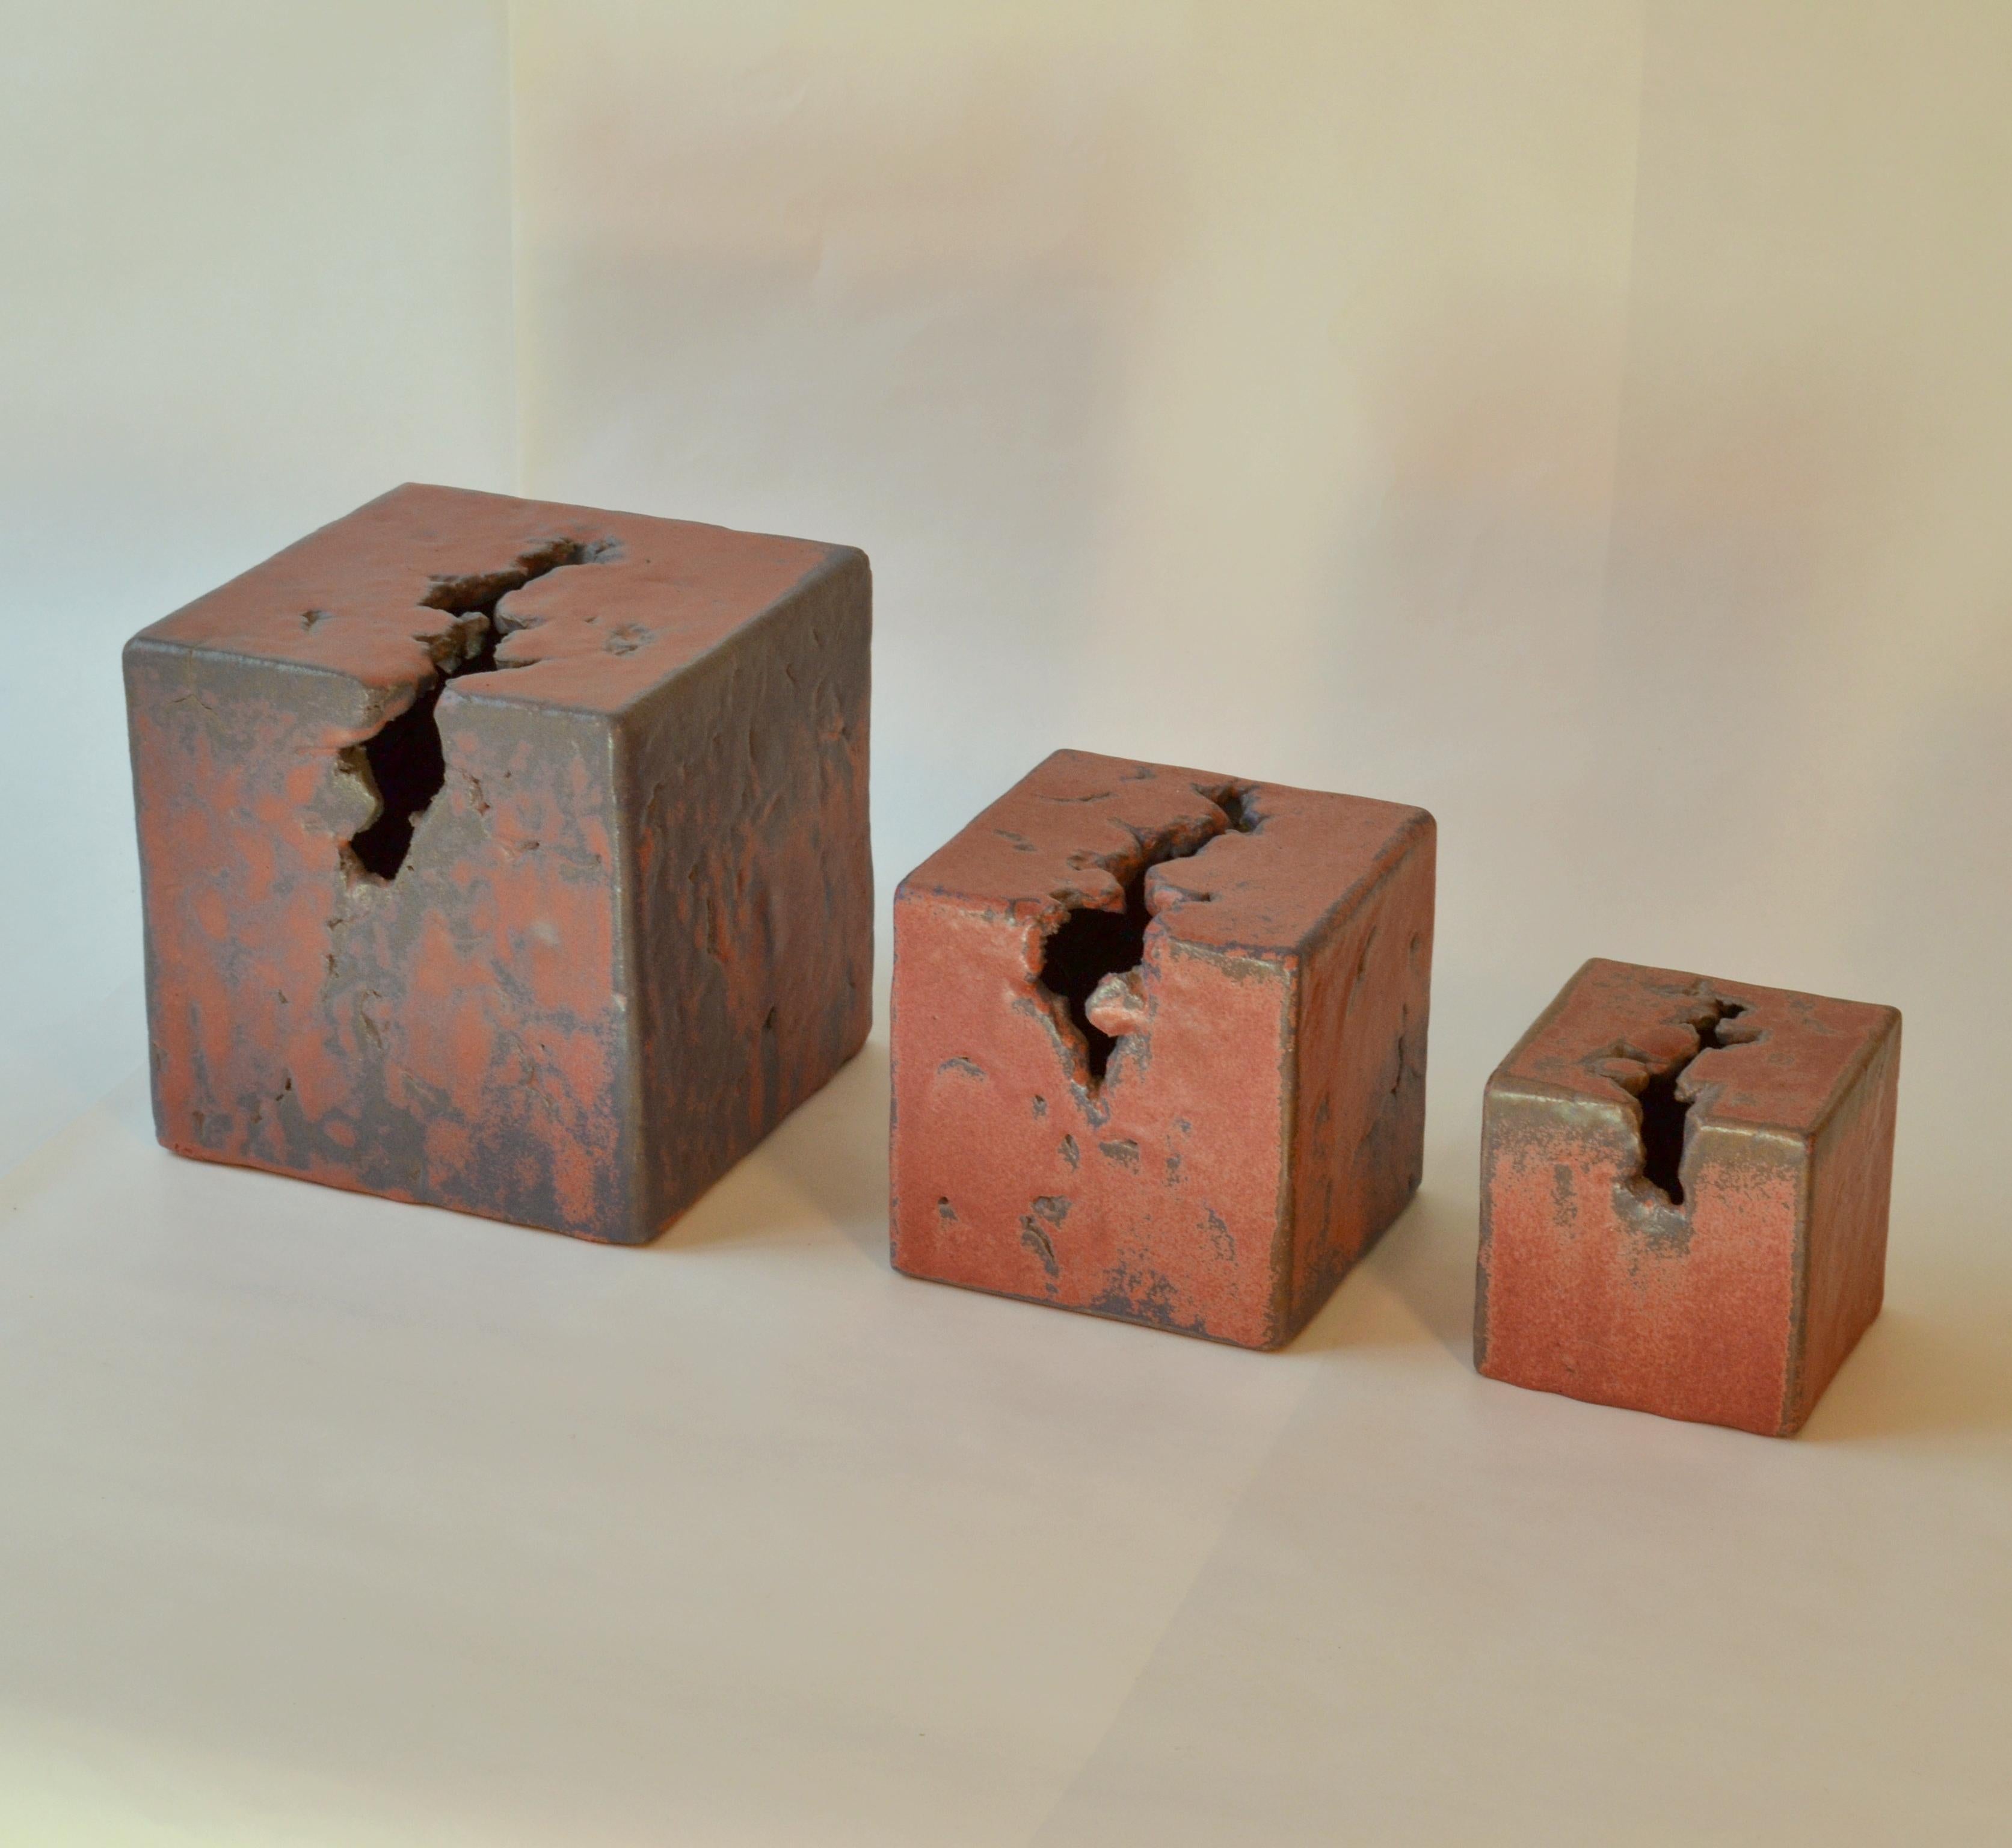 Un ensemble de trois sculptures uniques en céramique formées à la main de cubes avec des ouvertures en forme de cratère sur deux plans par le Studio Mobach aux Pays-Bas dans les années 1980. Les céramiques de Mobach sont produites par les meilleurs